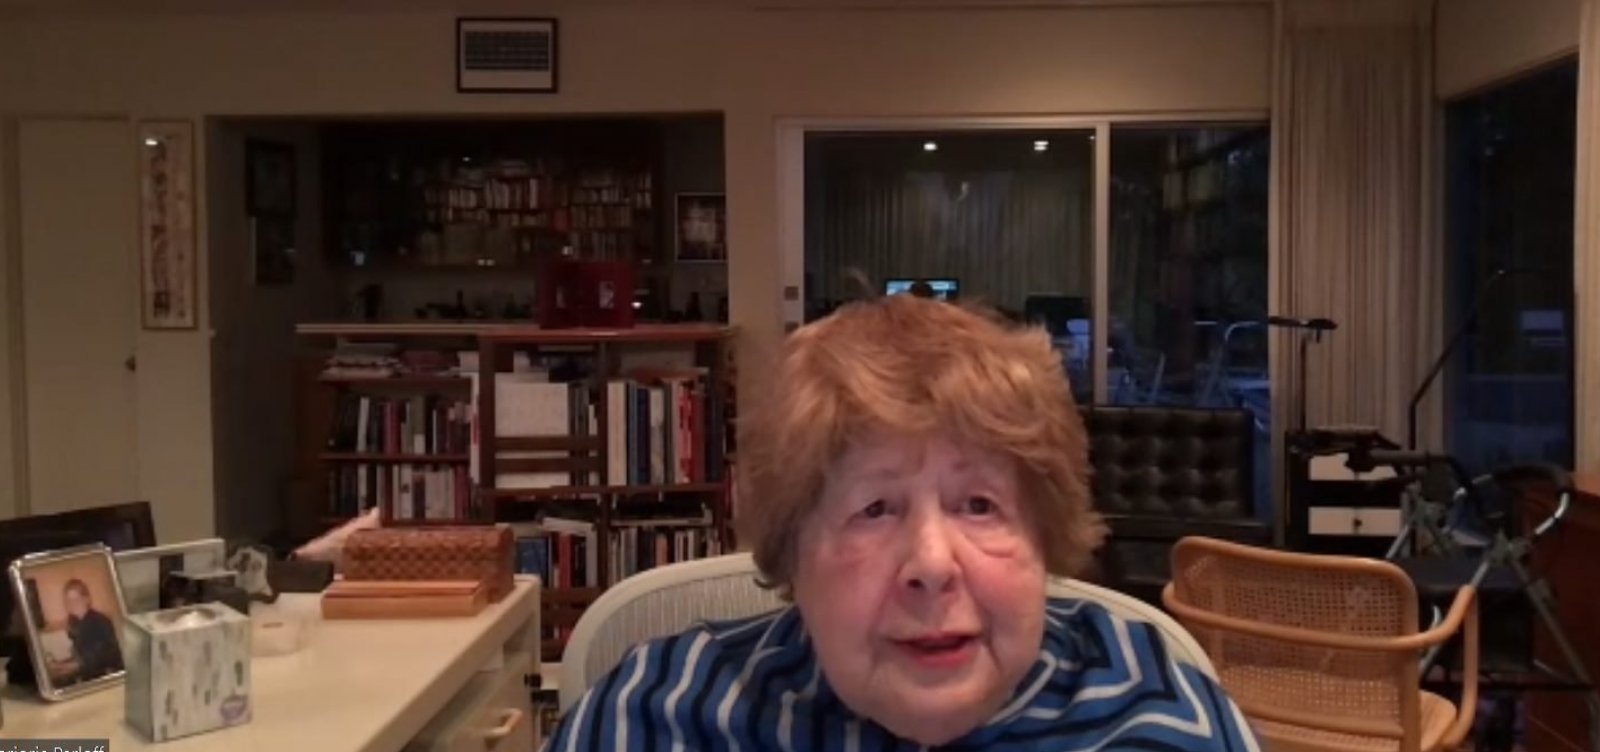 Morre Marjorie Perloff, uma das mais importantes críticas literárias, aos 92 anos